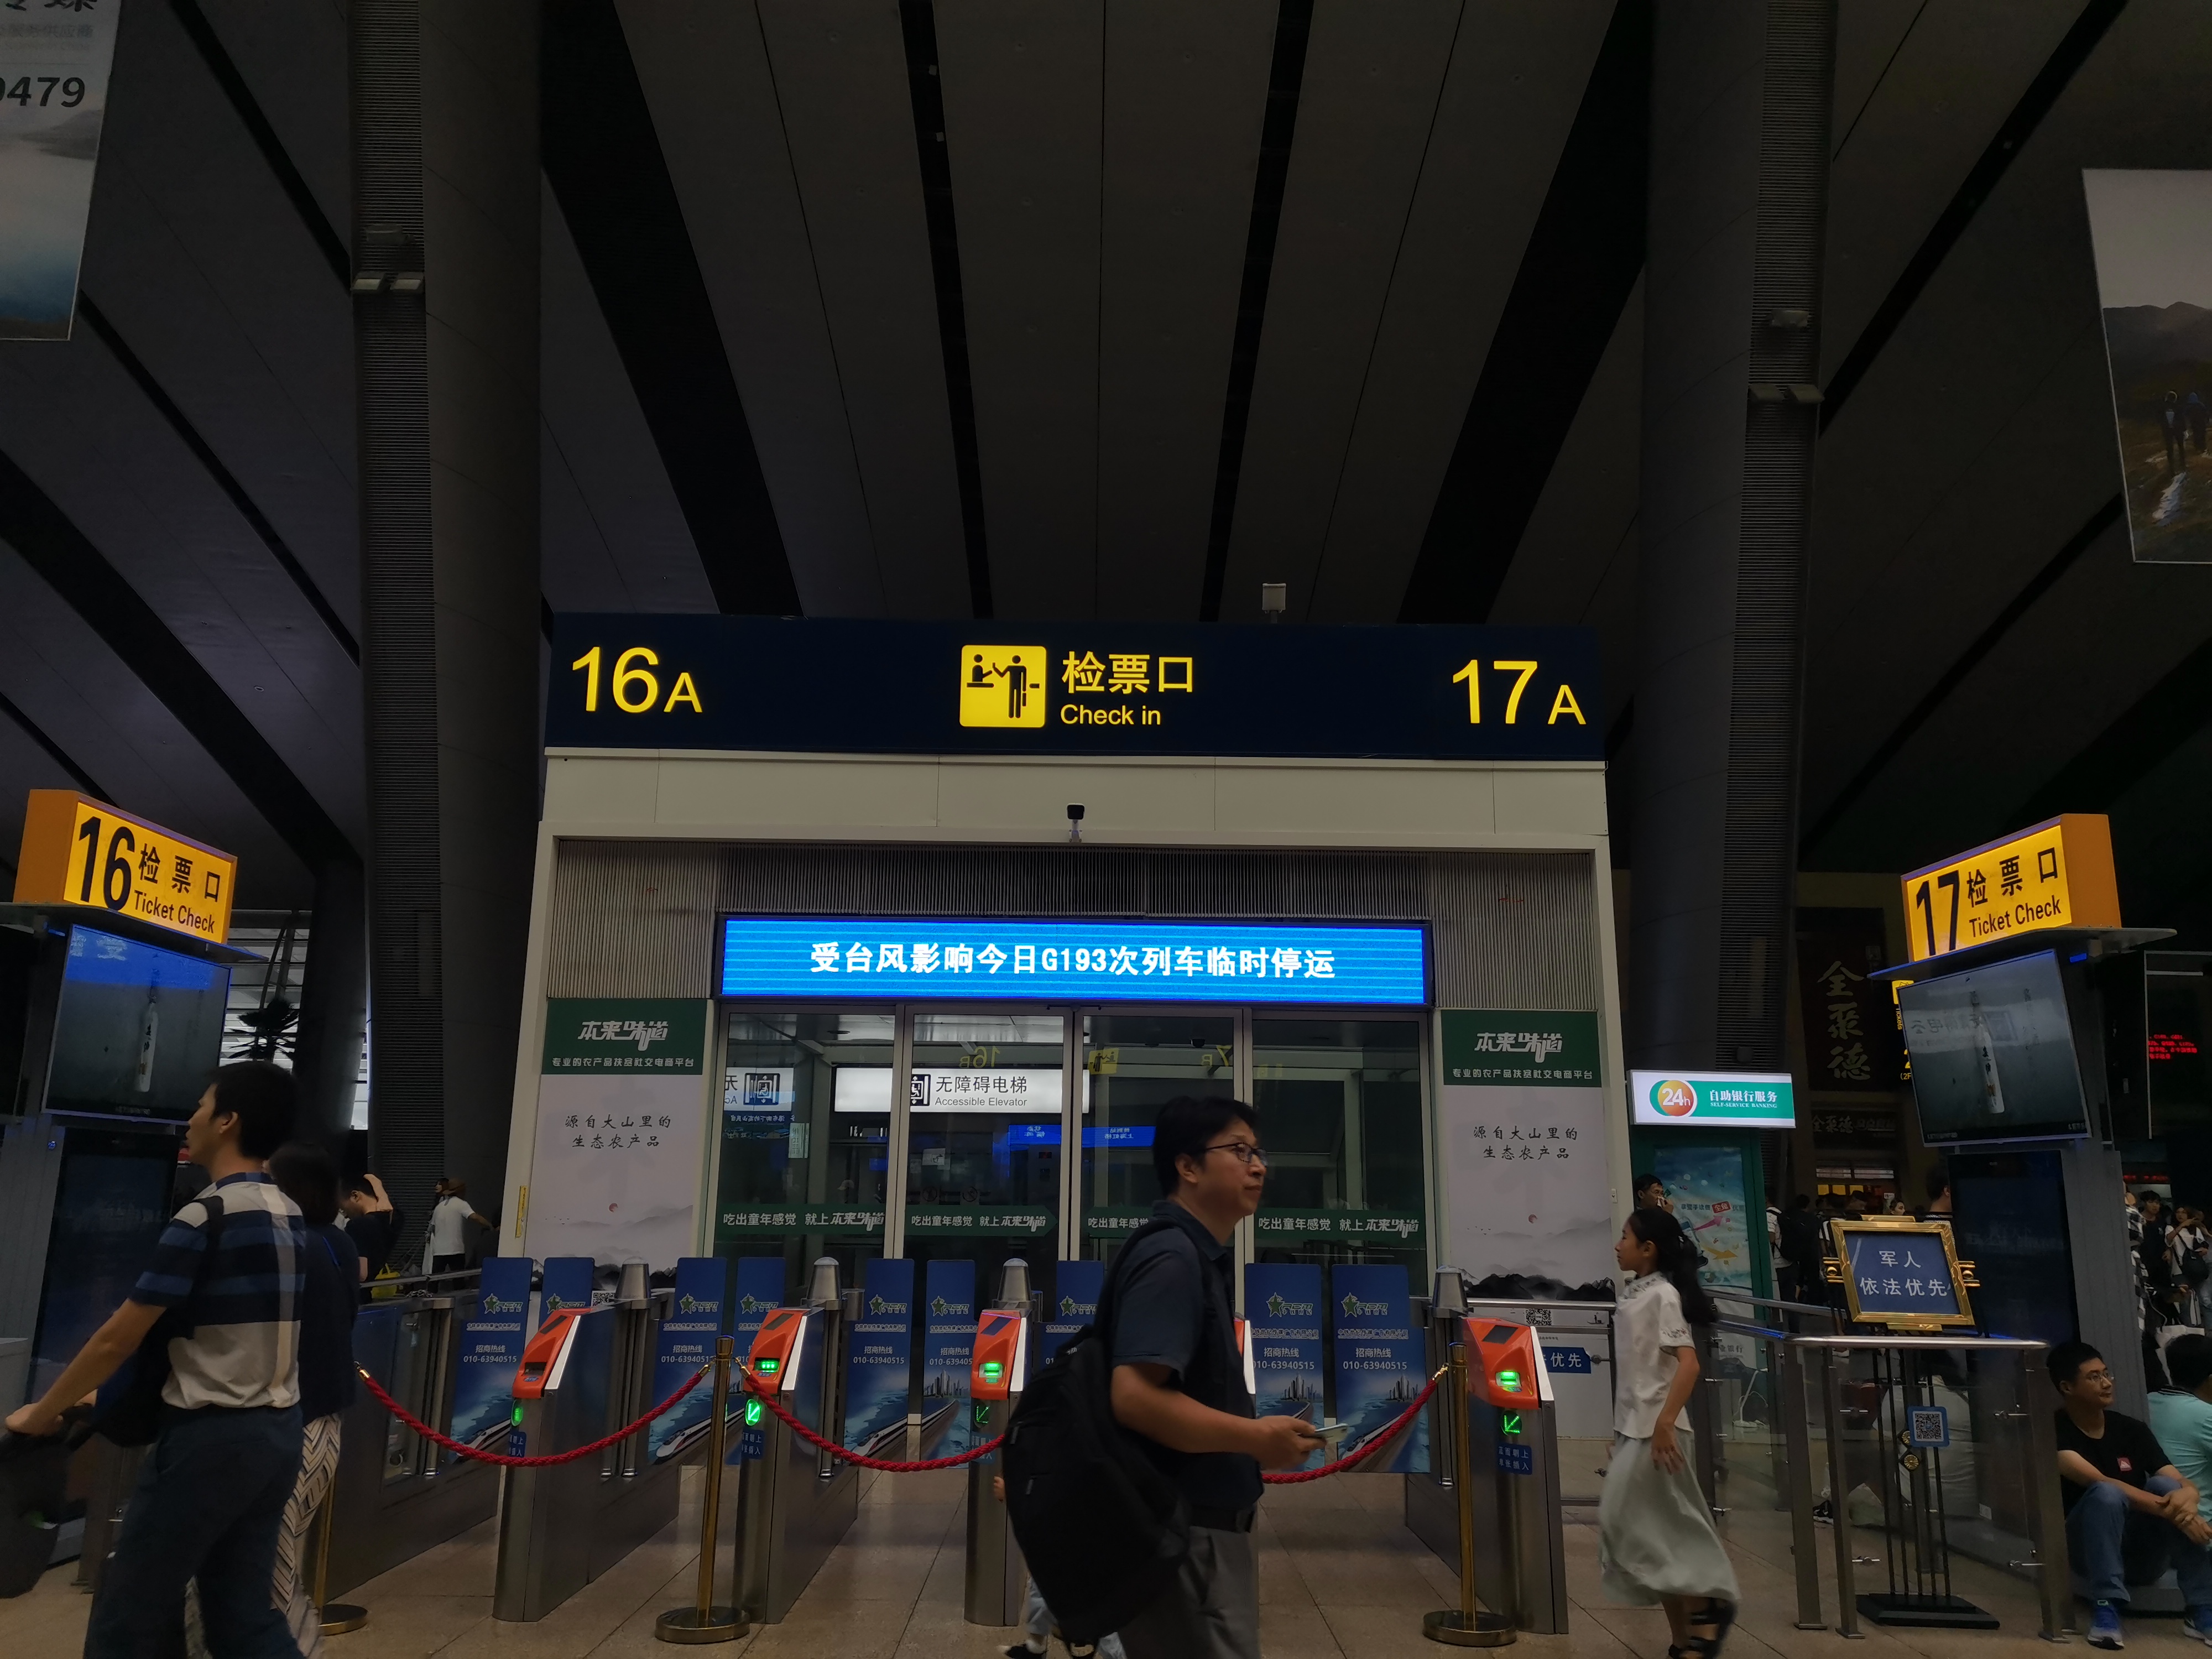 2019年8月11日,北京南站候车大厅检票口,受台风影响,该次列车临时停运